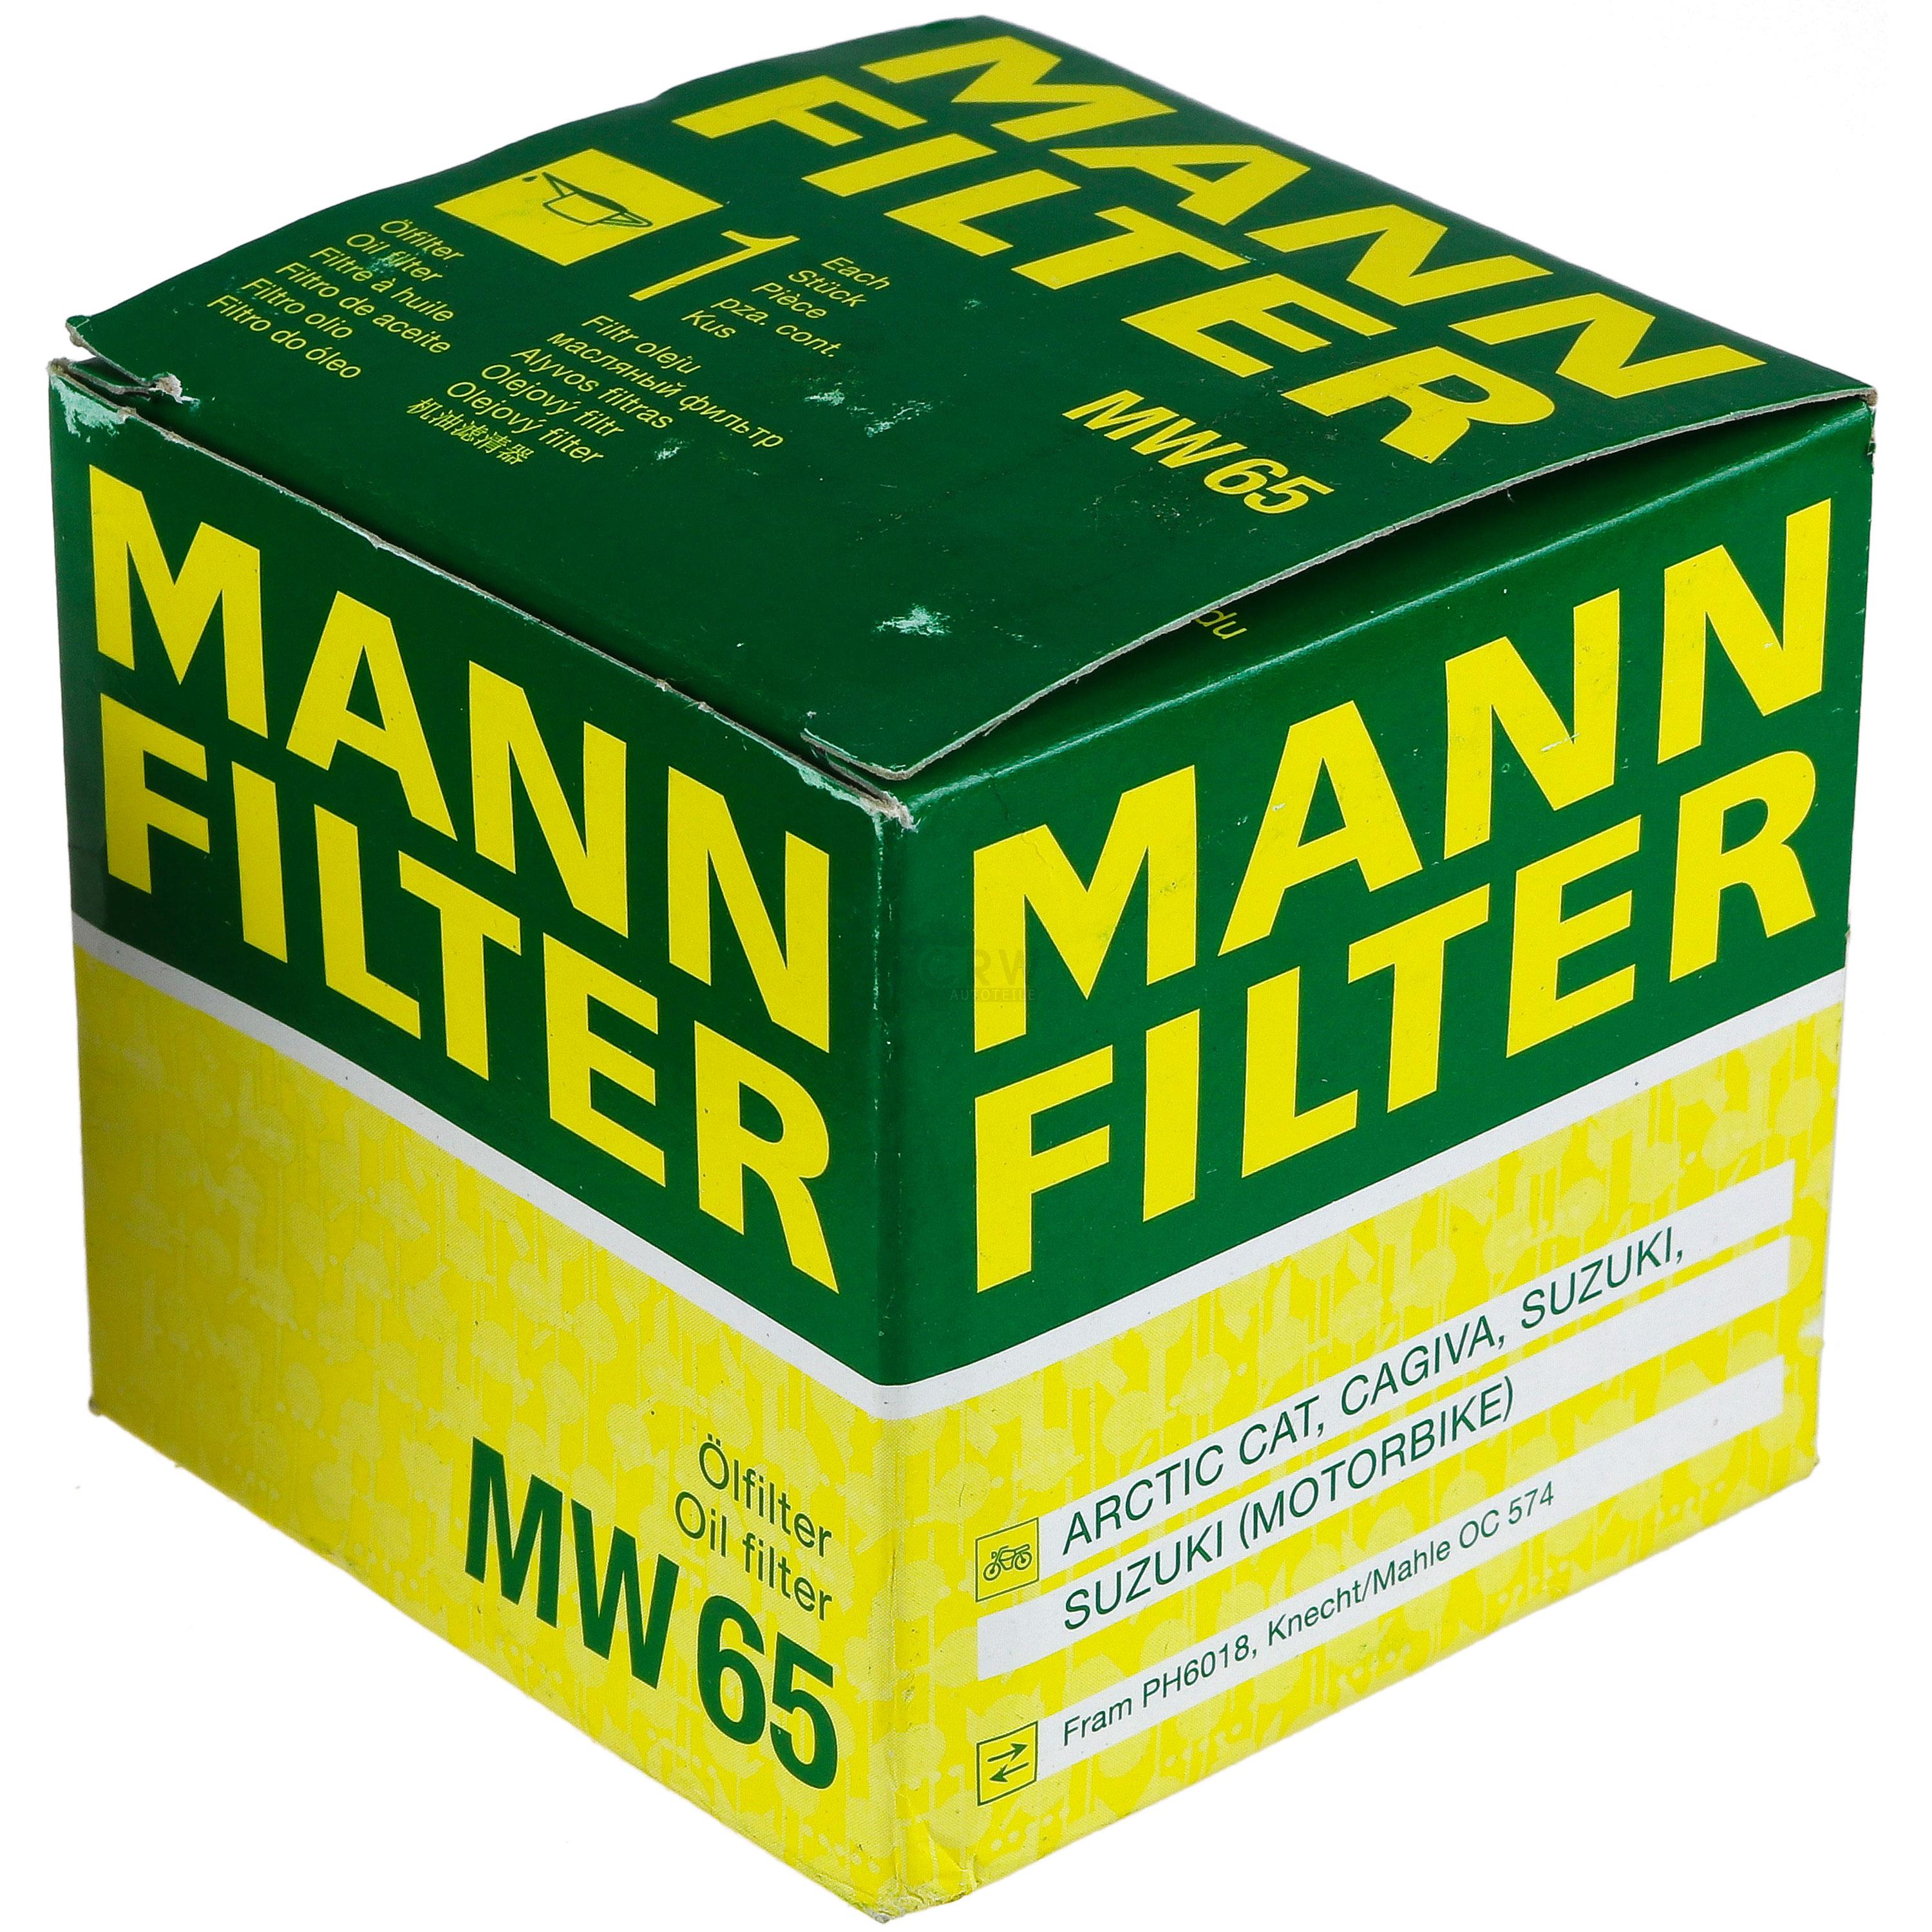 MANN-FILTER Ölfilter MW 65 Oil Filter